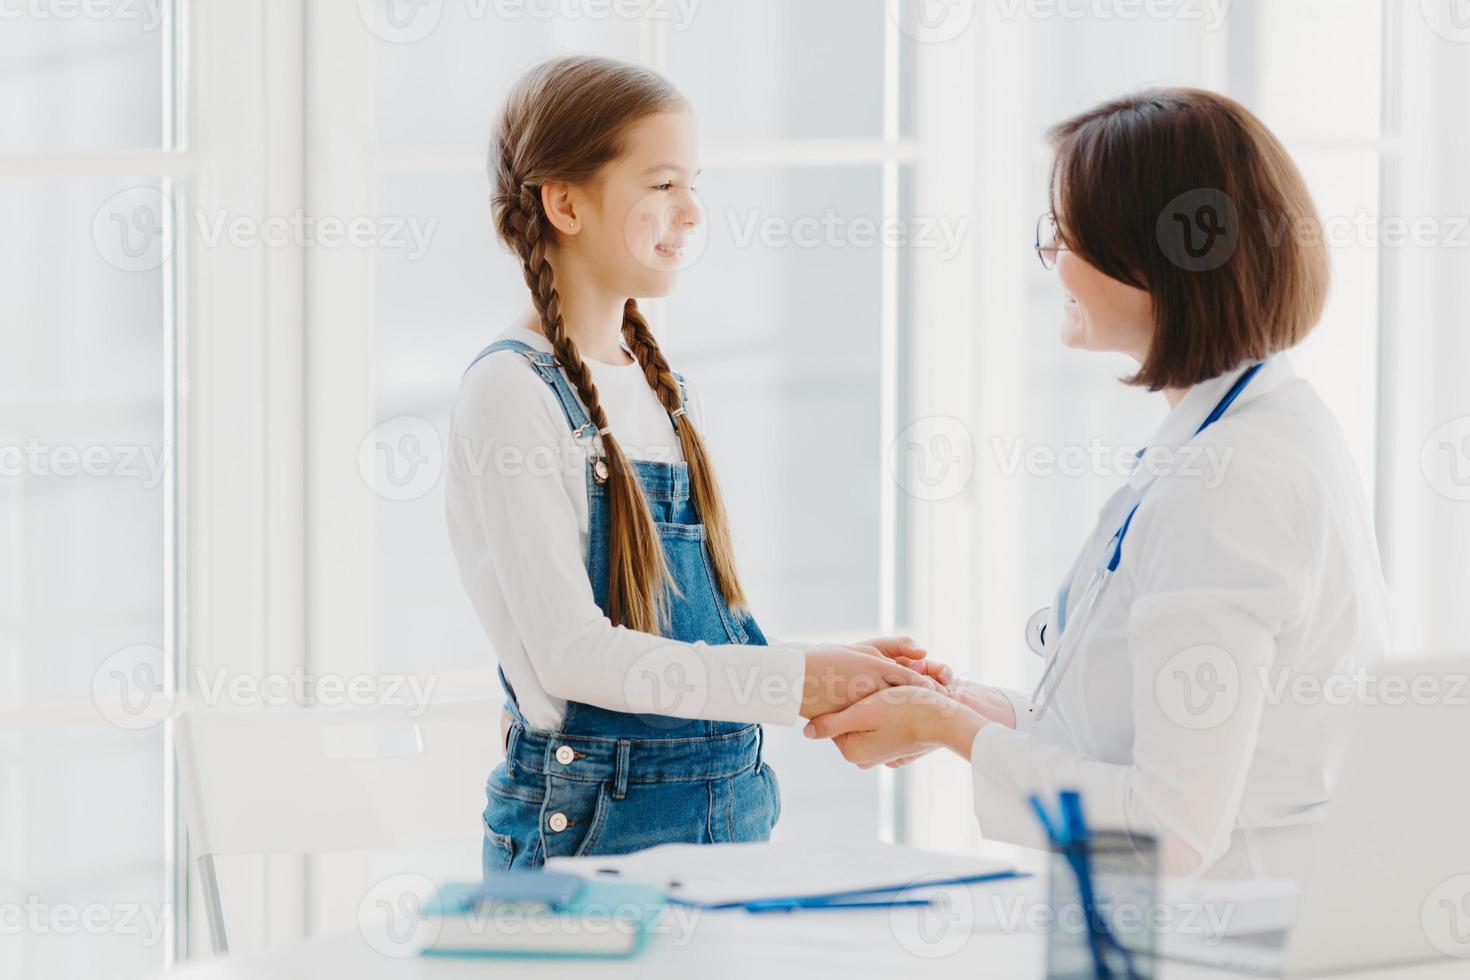 Ärztin schüttelt Mädchen die Hand, spricht unterstützende Worte, kümmert sich während der professionellen Beratung um das Kind, ist immer bereit, bei einer guten Behandlung zu helfen. Krankenversicherungskonzept foto